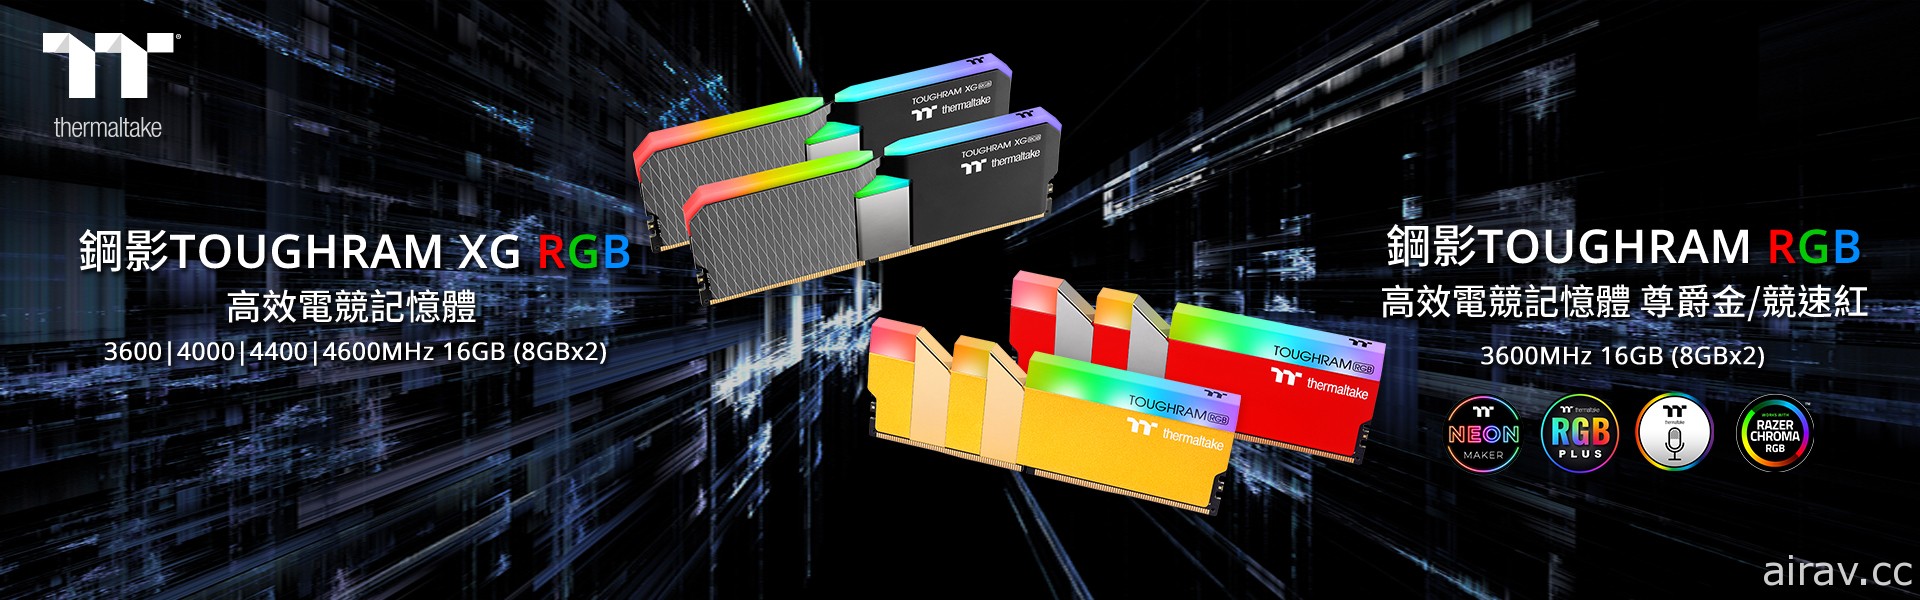 钢影 TOUGHRAM XG RGB 16 LED 系列和钢影 TOUGHRAM RGB DDR4 新色内存发售